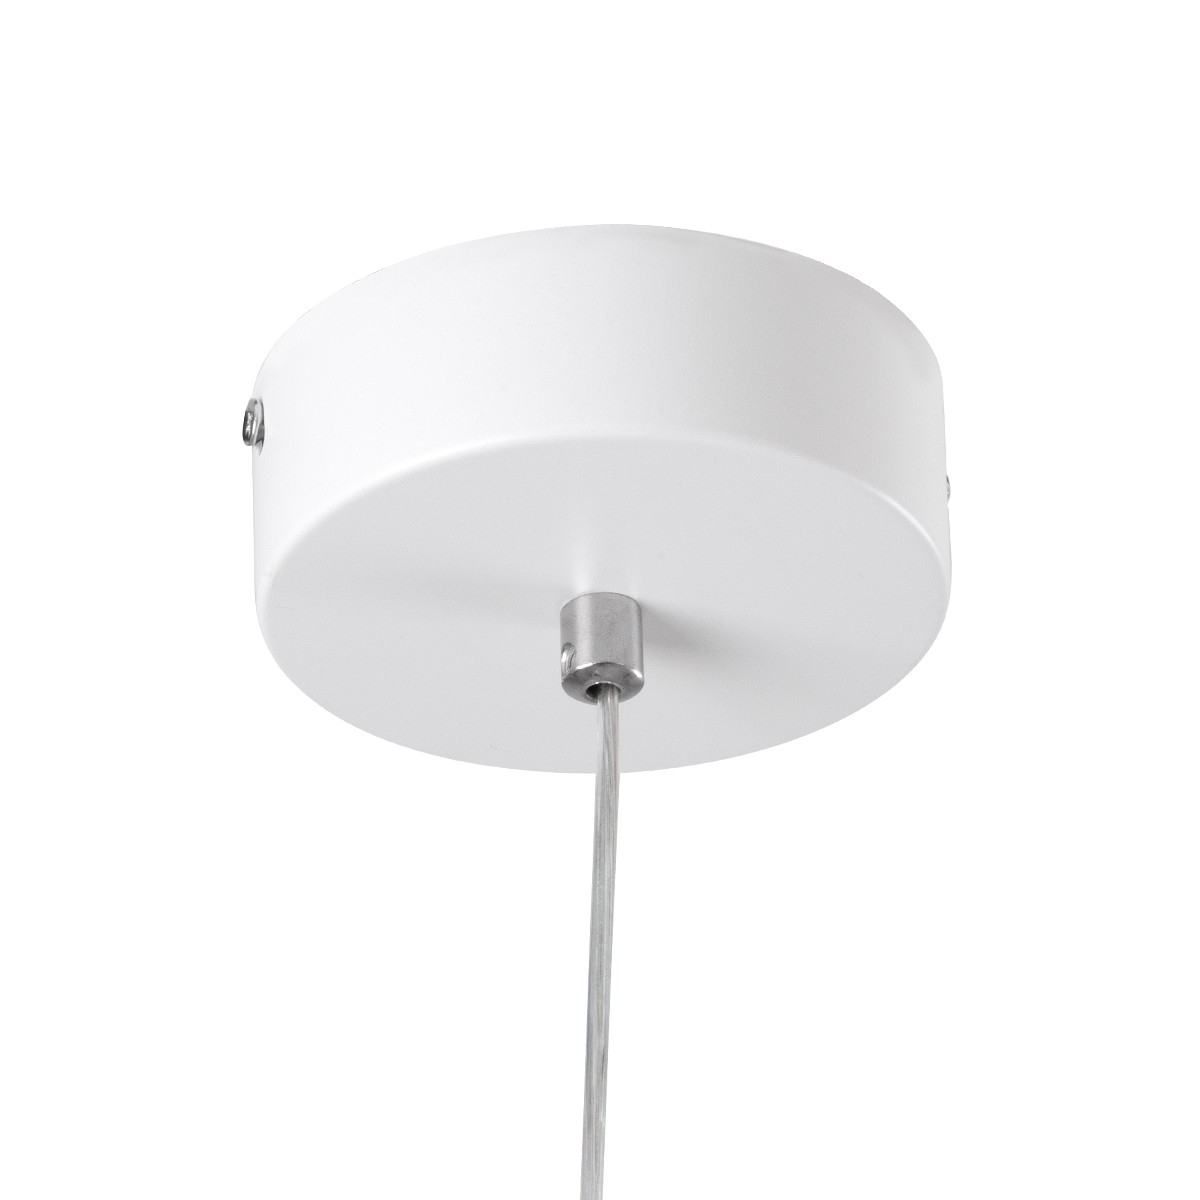 LED Κρεμαστό Φωτιστικό Οροφής Λευκό Design ROSE 22W Εναλλαγή Φωτισμού μέσω Διακόπτη On/Off Μ24 x Π22 x Υ24cm 61065